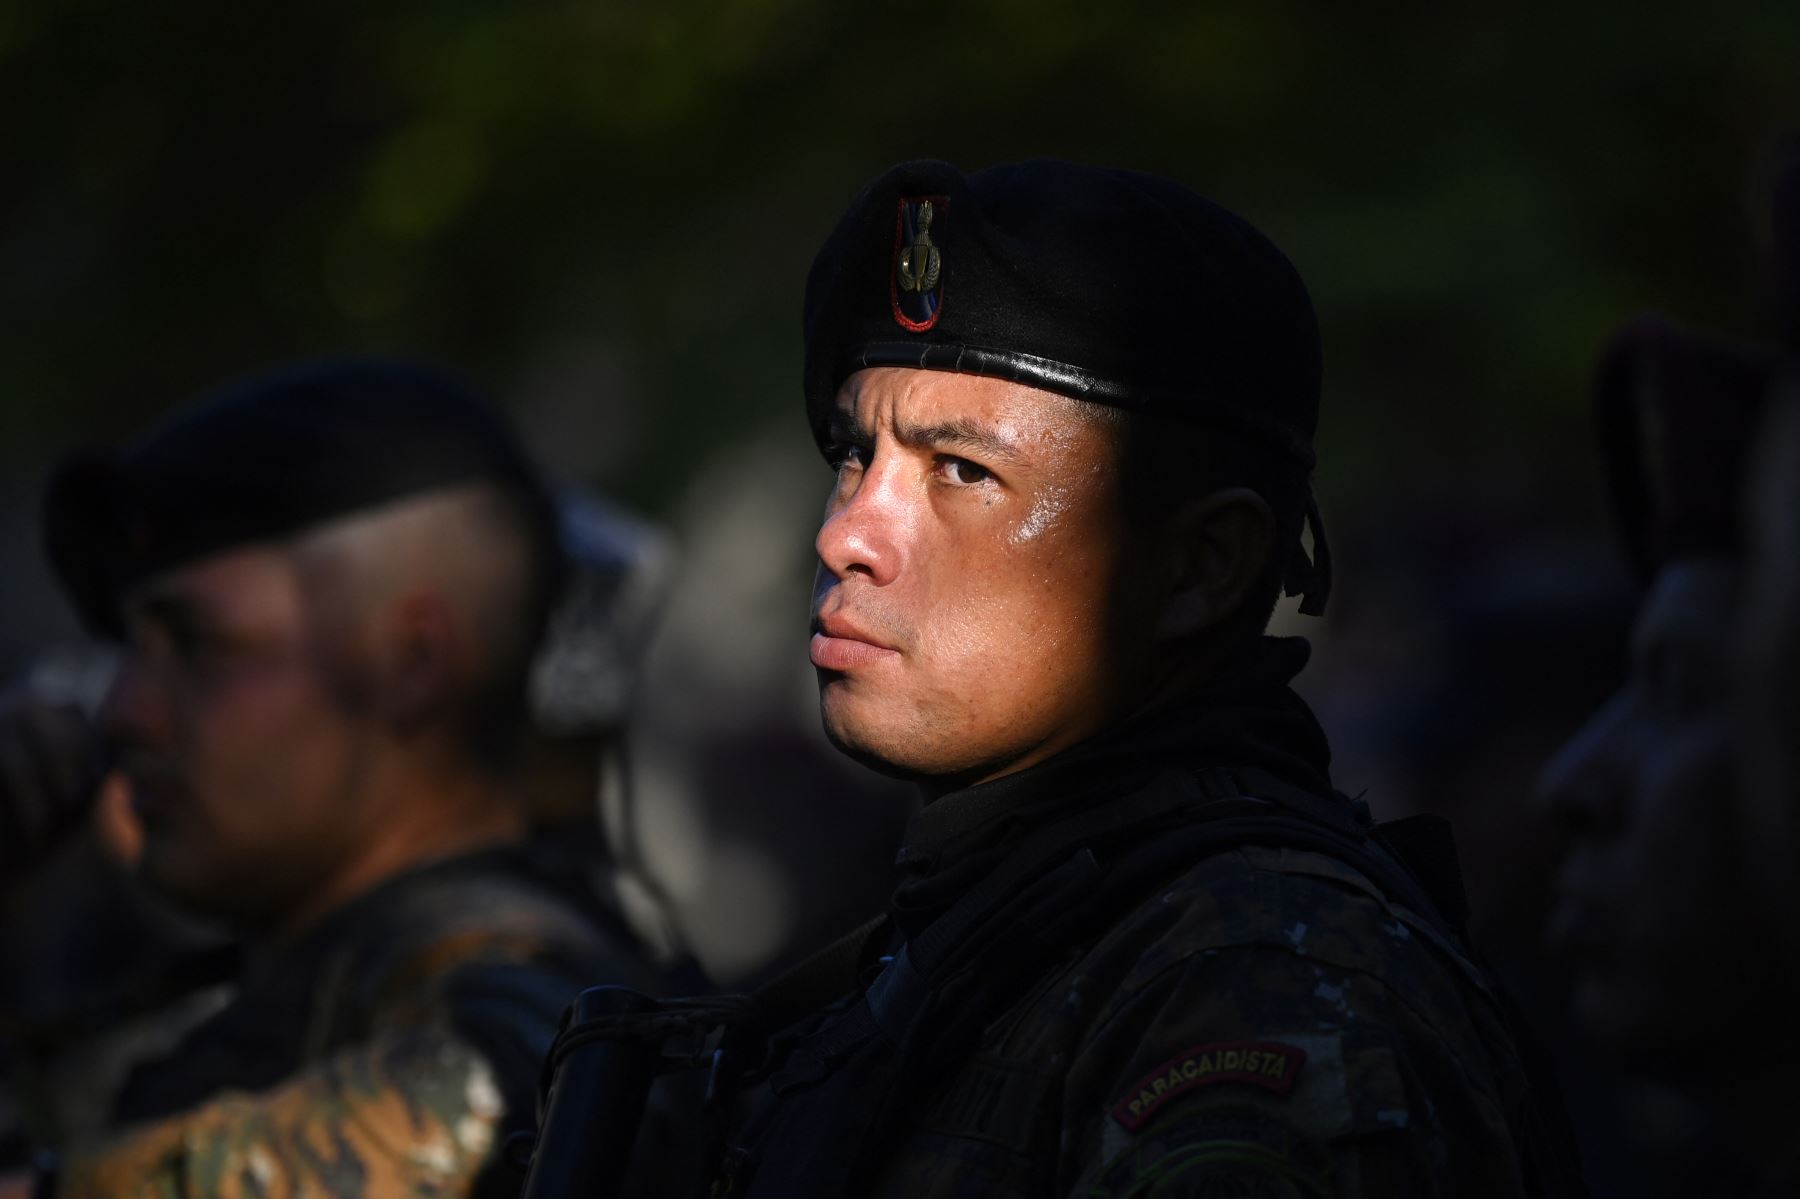 Soldados patrullan la ciudad de Soyapango, El Salvador, durante un operativo de seguridad contra pandilleros que comenzó el 3 de diciembre que incluye registros casa por casa y es parte de un estado de emergencia declarado por el presidente Nayib Bukele esta primavera luego de un aumento en la violencia de las pandillas.
Foto: AFP